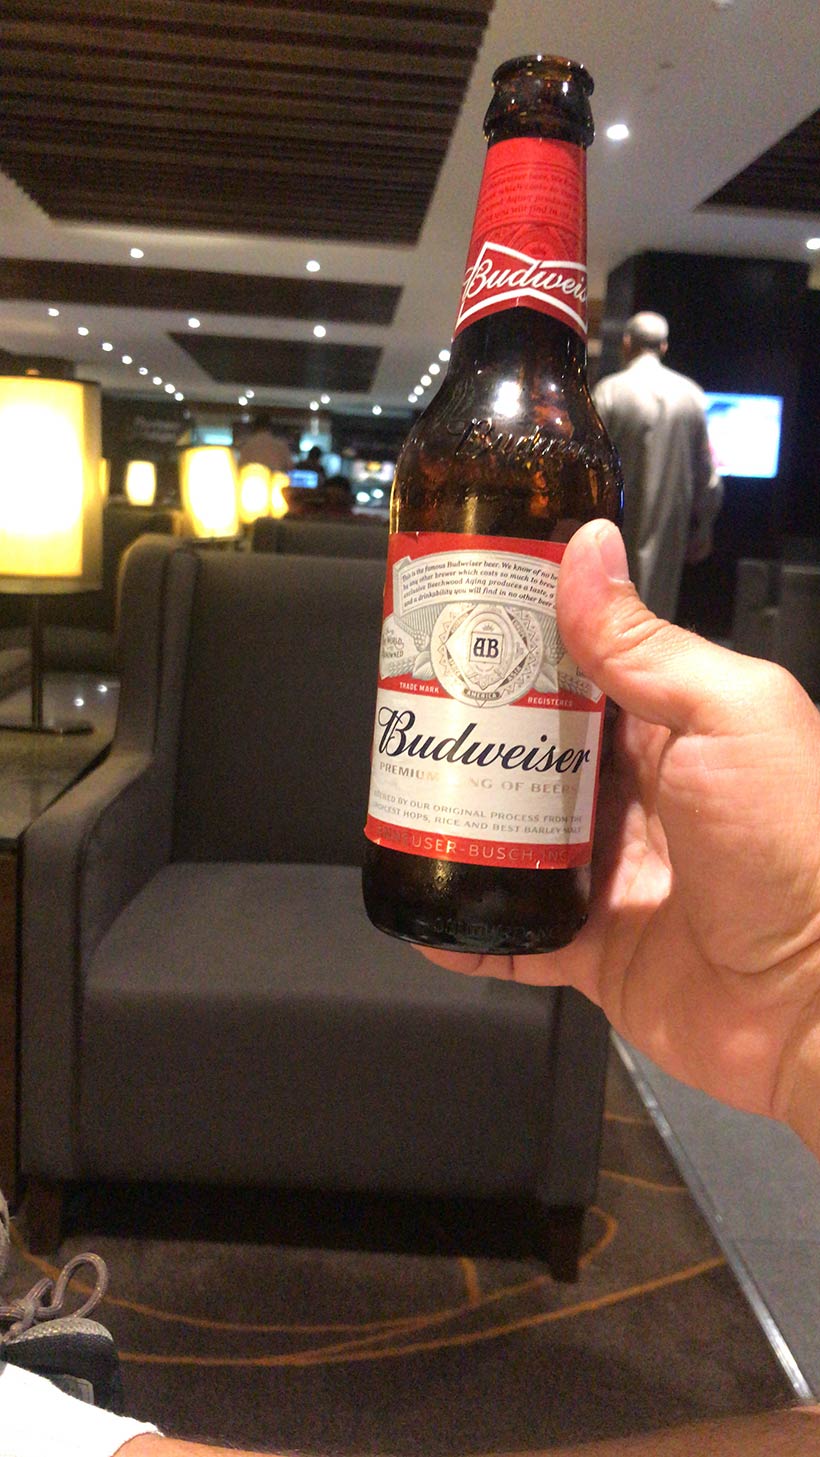 Tomando cerveja no VIP Lounge de Bangalore em uma conexão na Índia